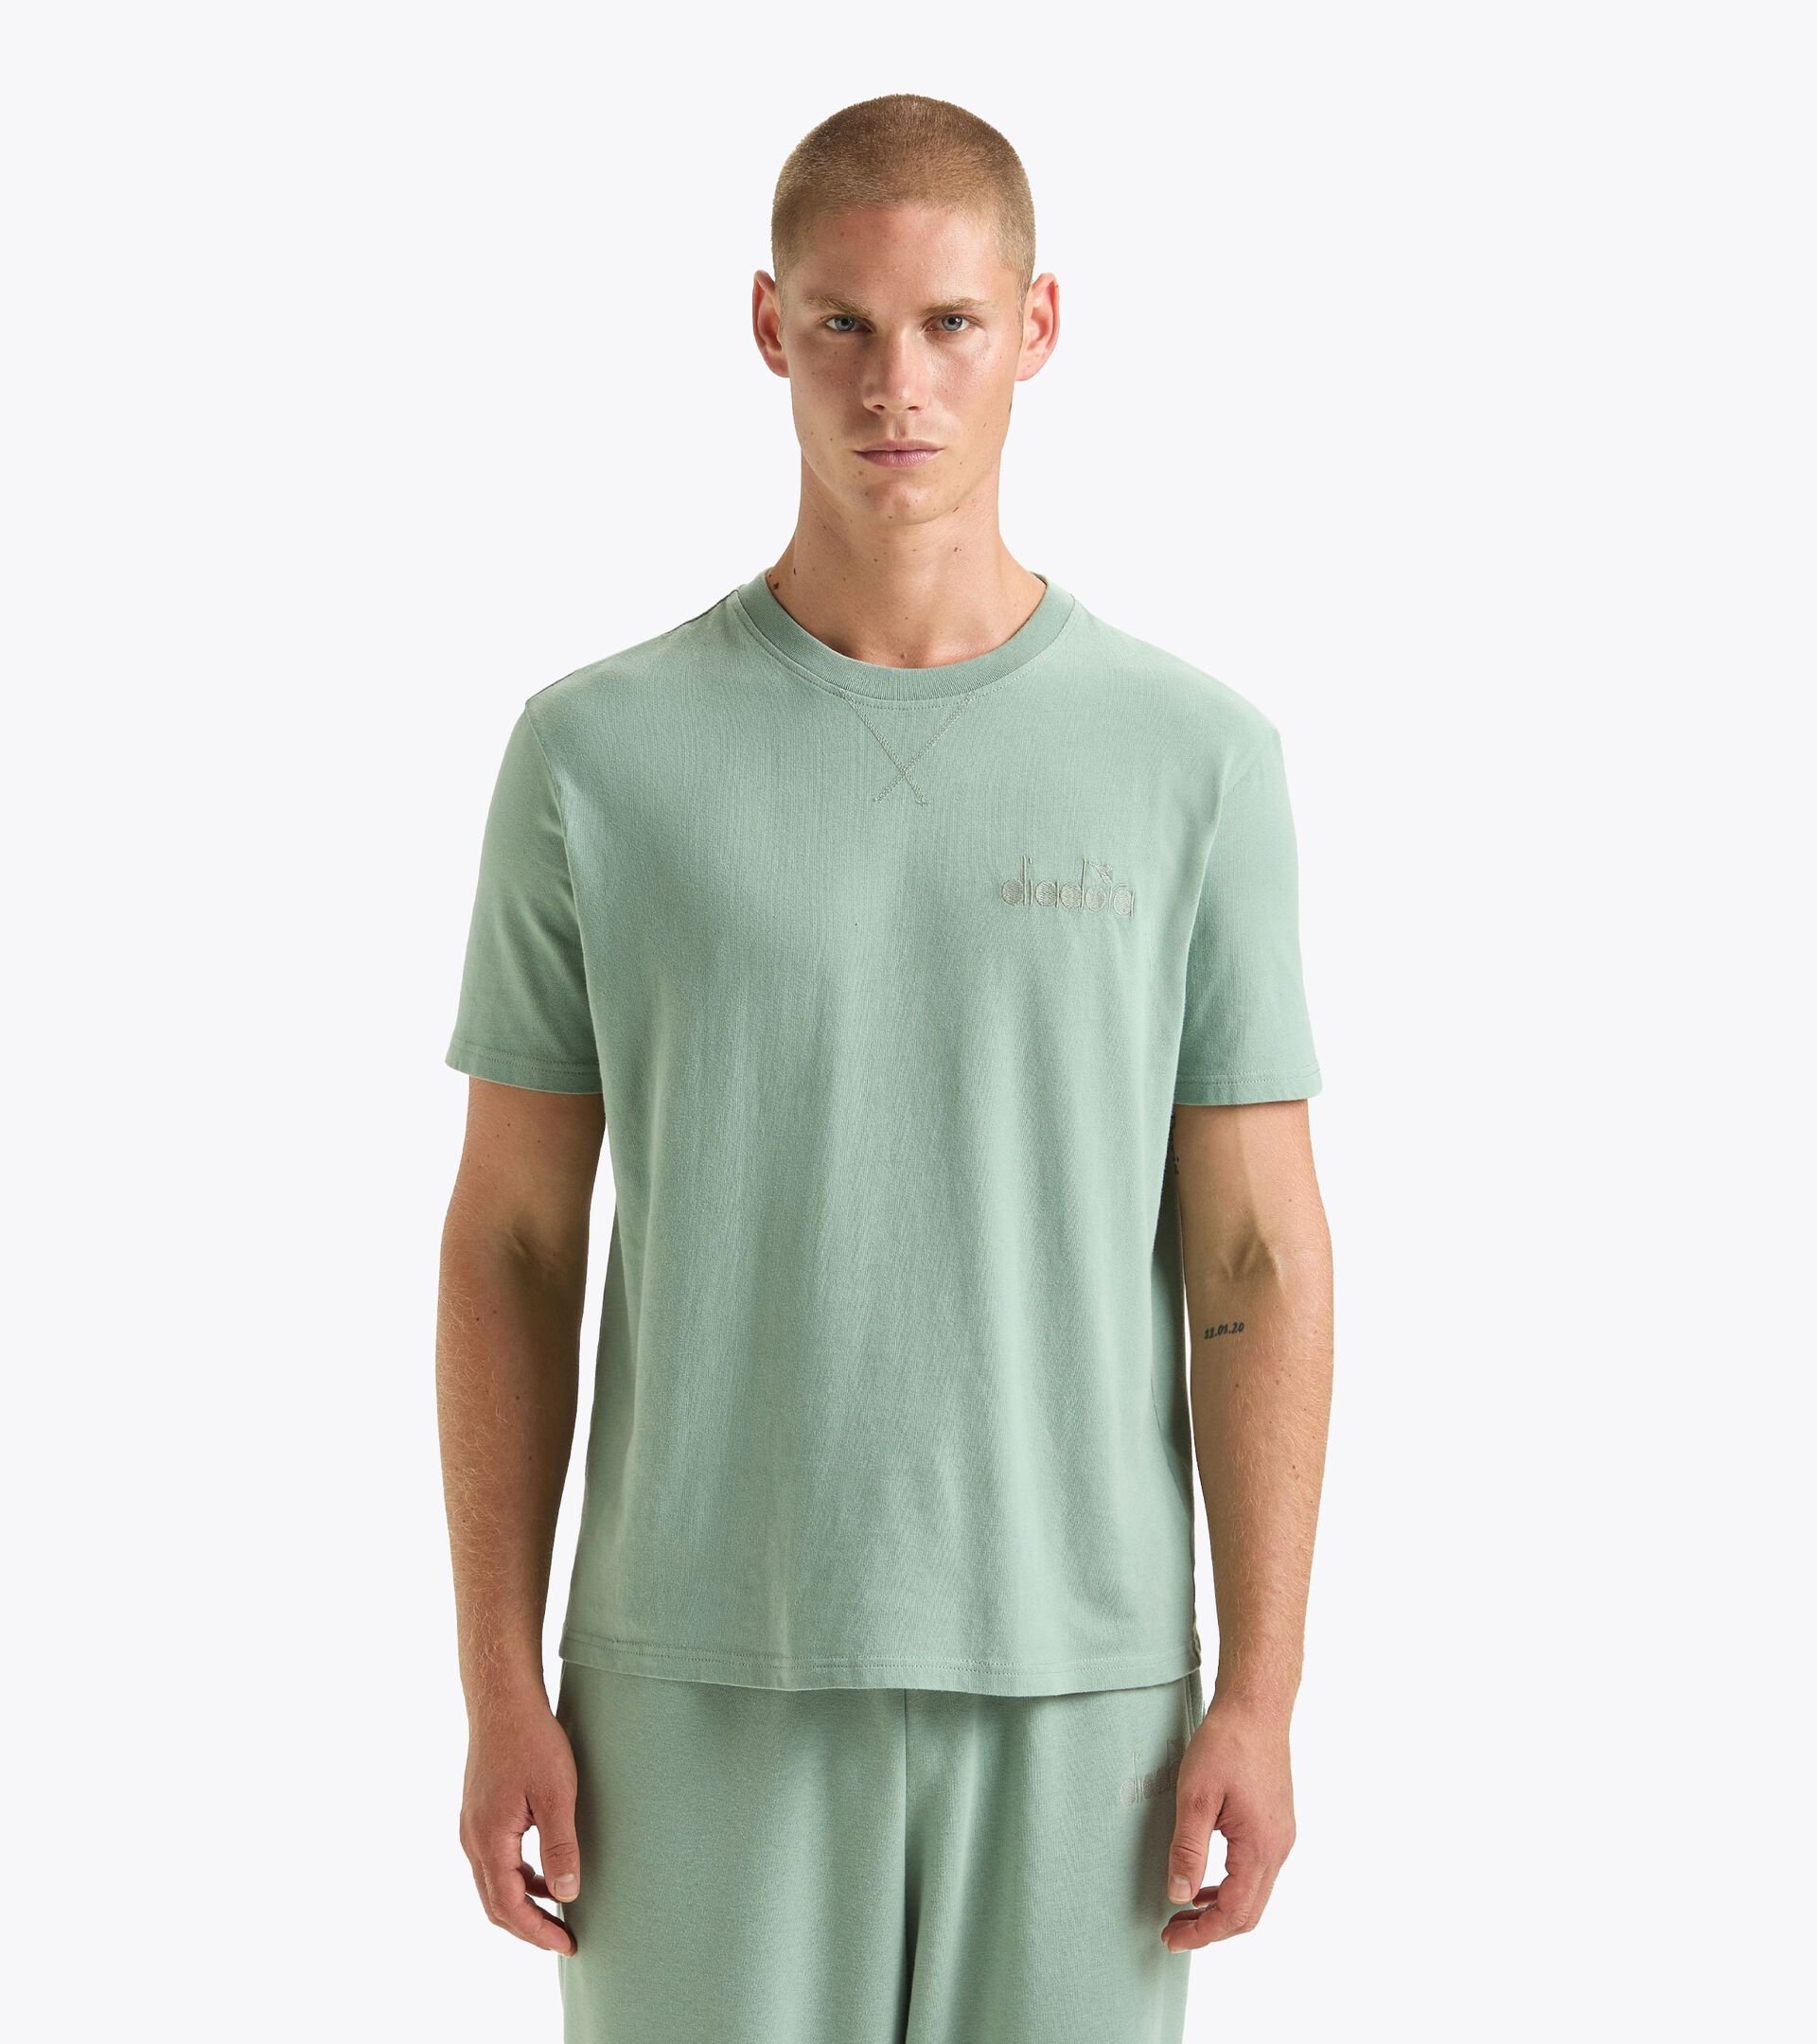 T-shirt - Gender Neutral T-SHIRT SS ATHL. LOGO VERDE ICEBERG - Diadora